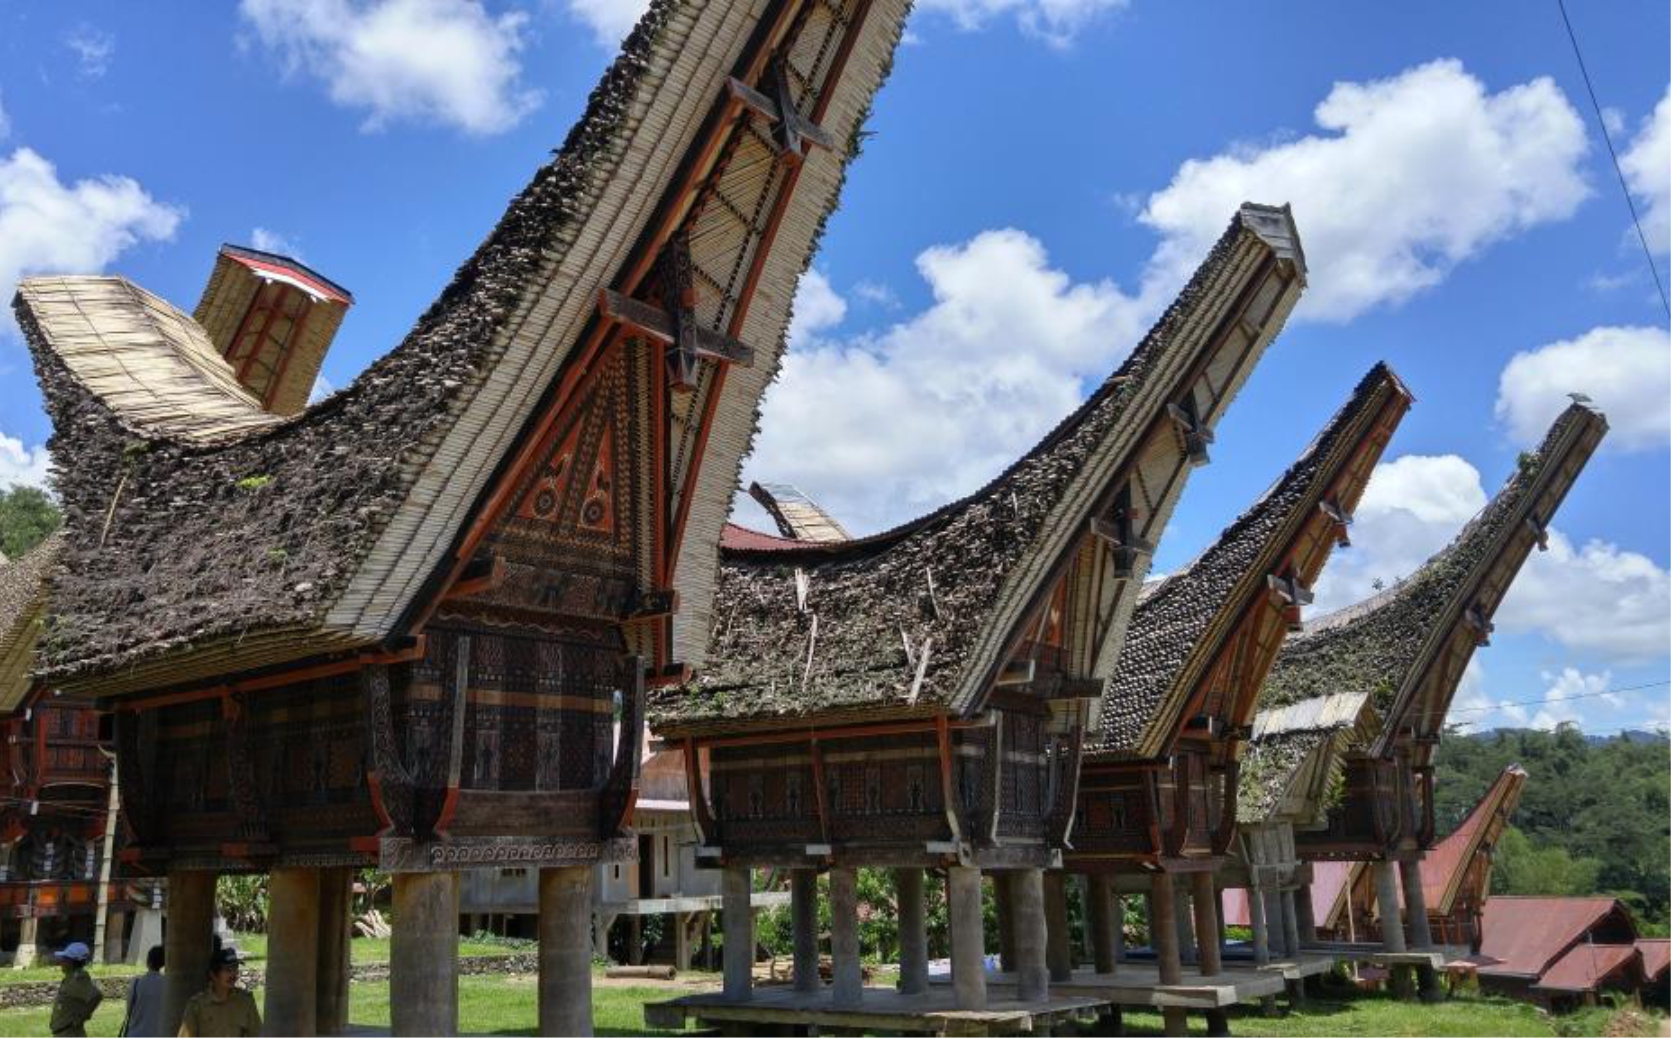 Rumah Adat Tongkonan, 10 Rumah Adat Tradisional Terunik Dan Terpopuler Di Indonesia